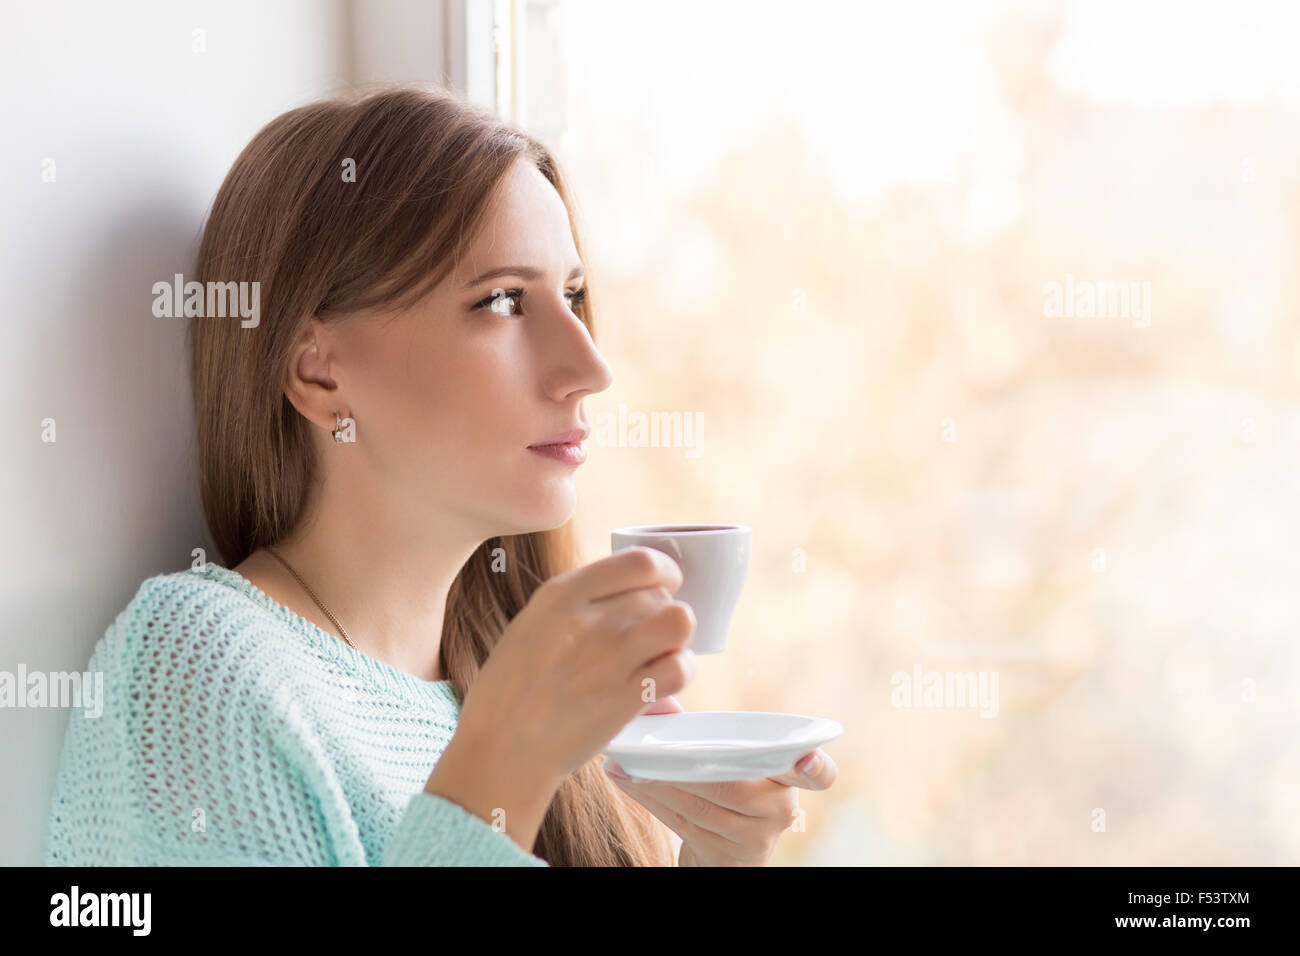 Junge Frau Kaffeetrinken in der Nähe des Fensters an sonnigen Tag. Ziemlich  Erwachsene denken Mädchen hält Tasse Espresso und Durchsicht w  Stockfotografie - Alamy